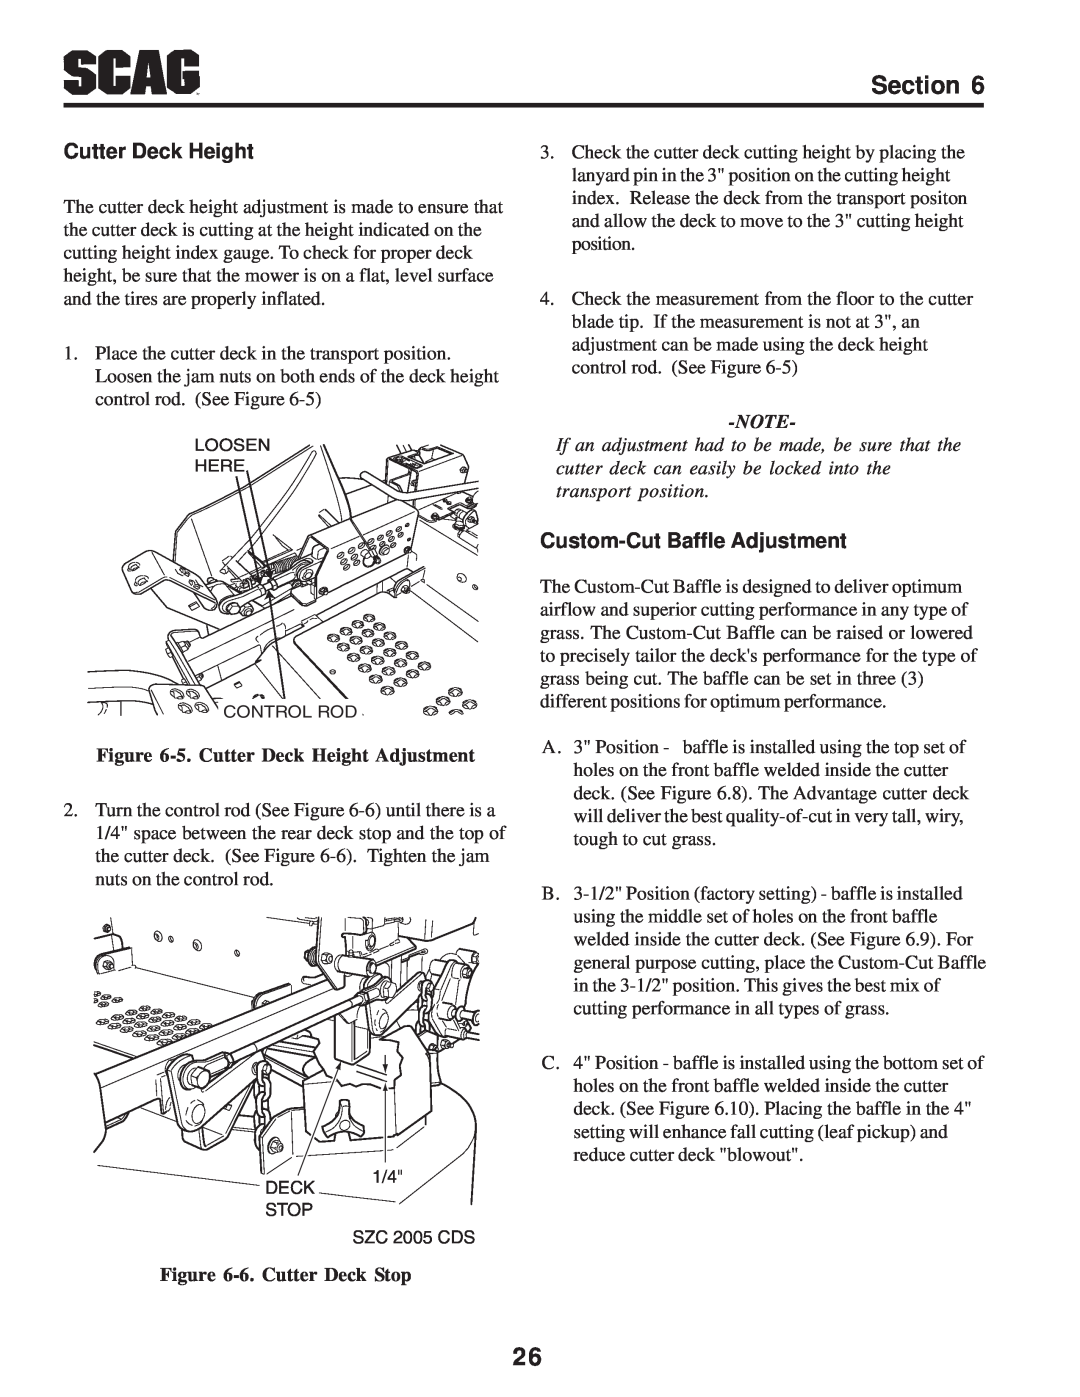 Scag Power Equipment SZC manual Custom-Cut Baffle Adjustment, 5. Cutter Deck Height Adjustment, 6. Cutter Deck Stop 